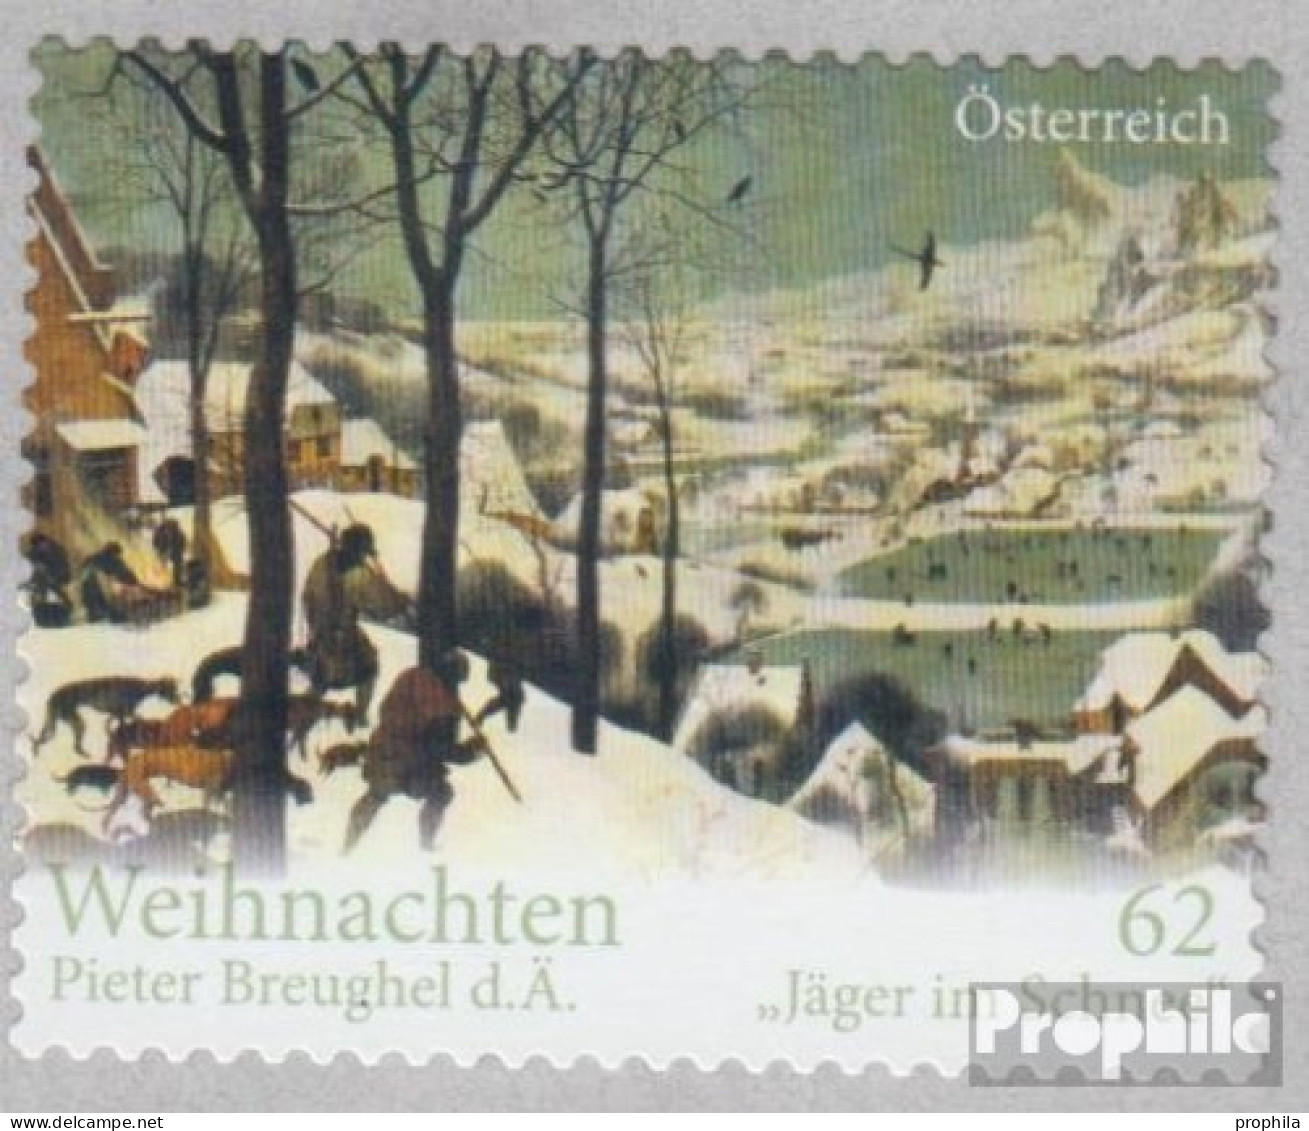 Österreich 3042 (kompl.Ausg.) Postfrisch 2012 Weihnachten - Nuovi